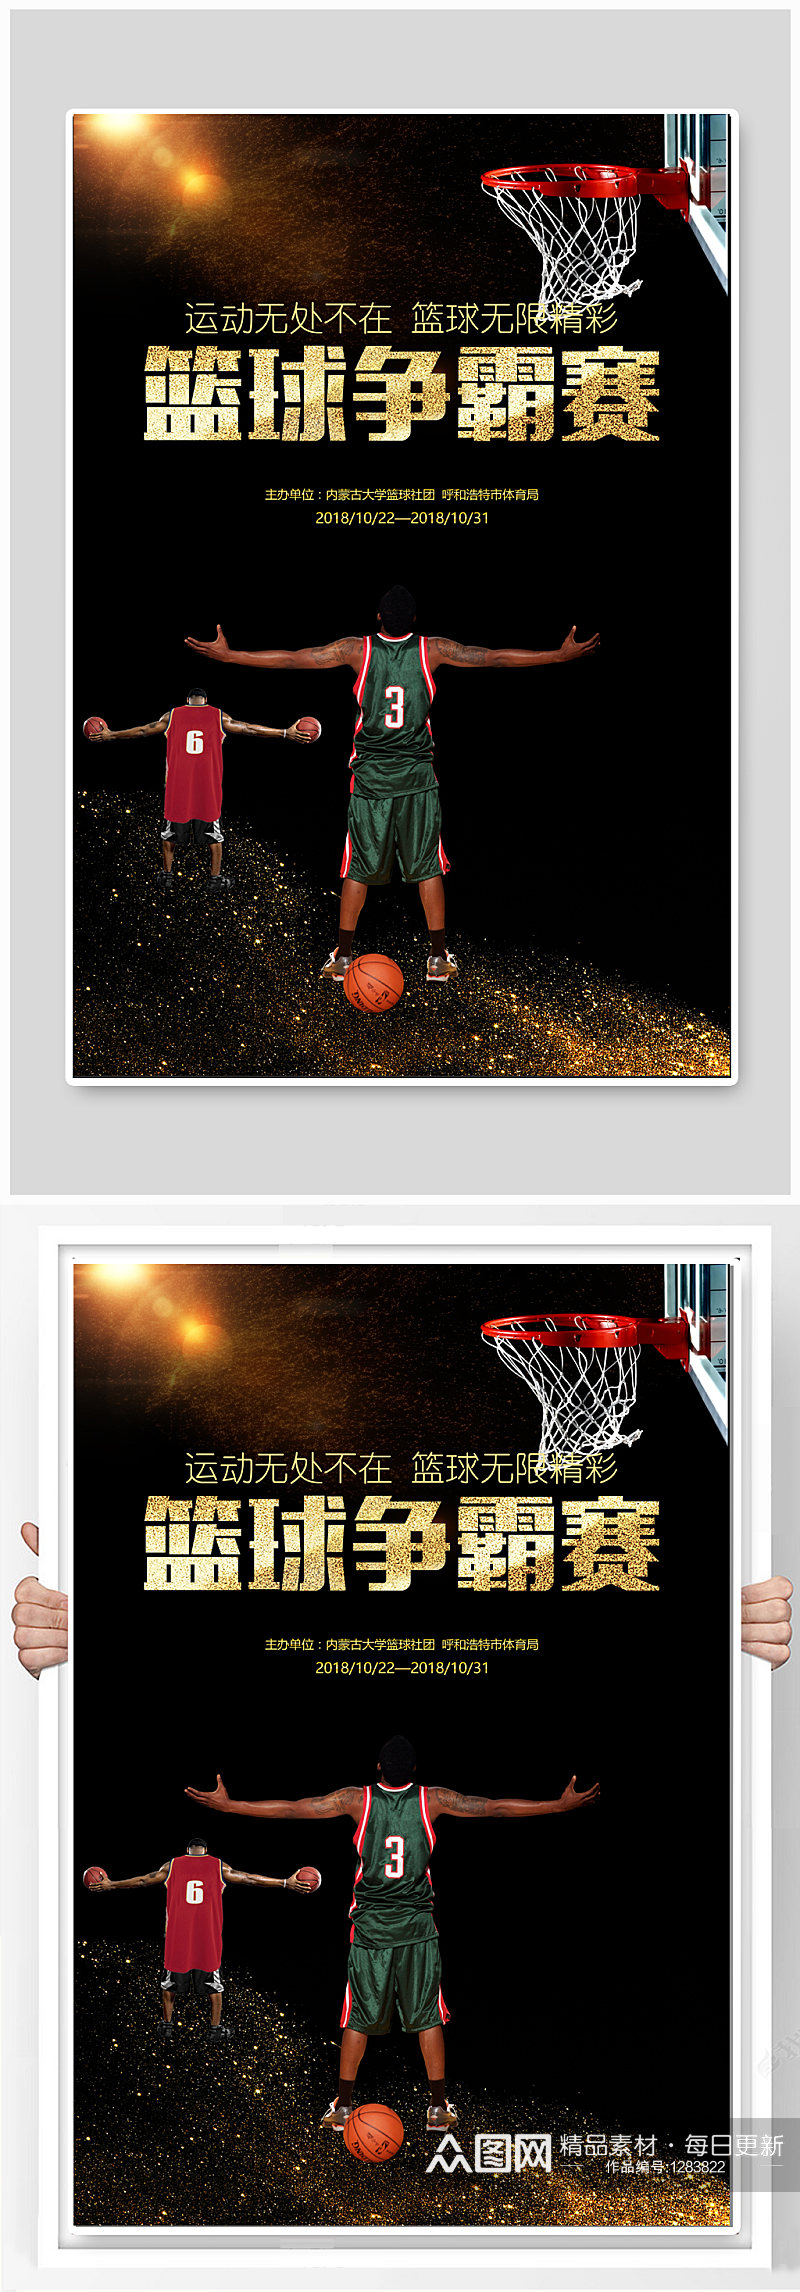 校园篮球争霸赛宣传海报素材